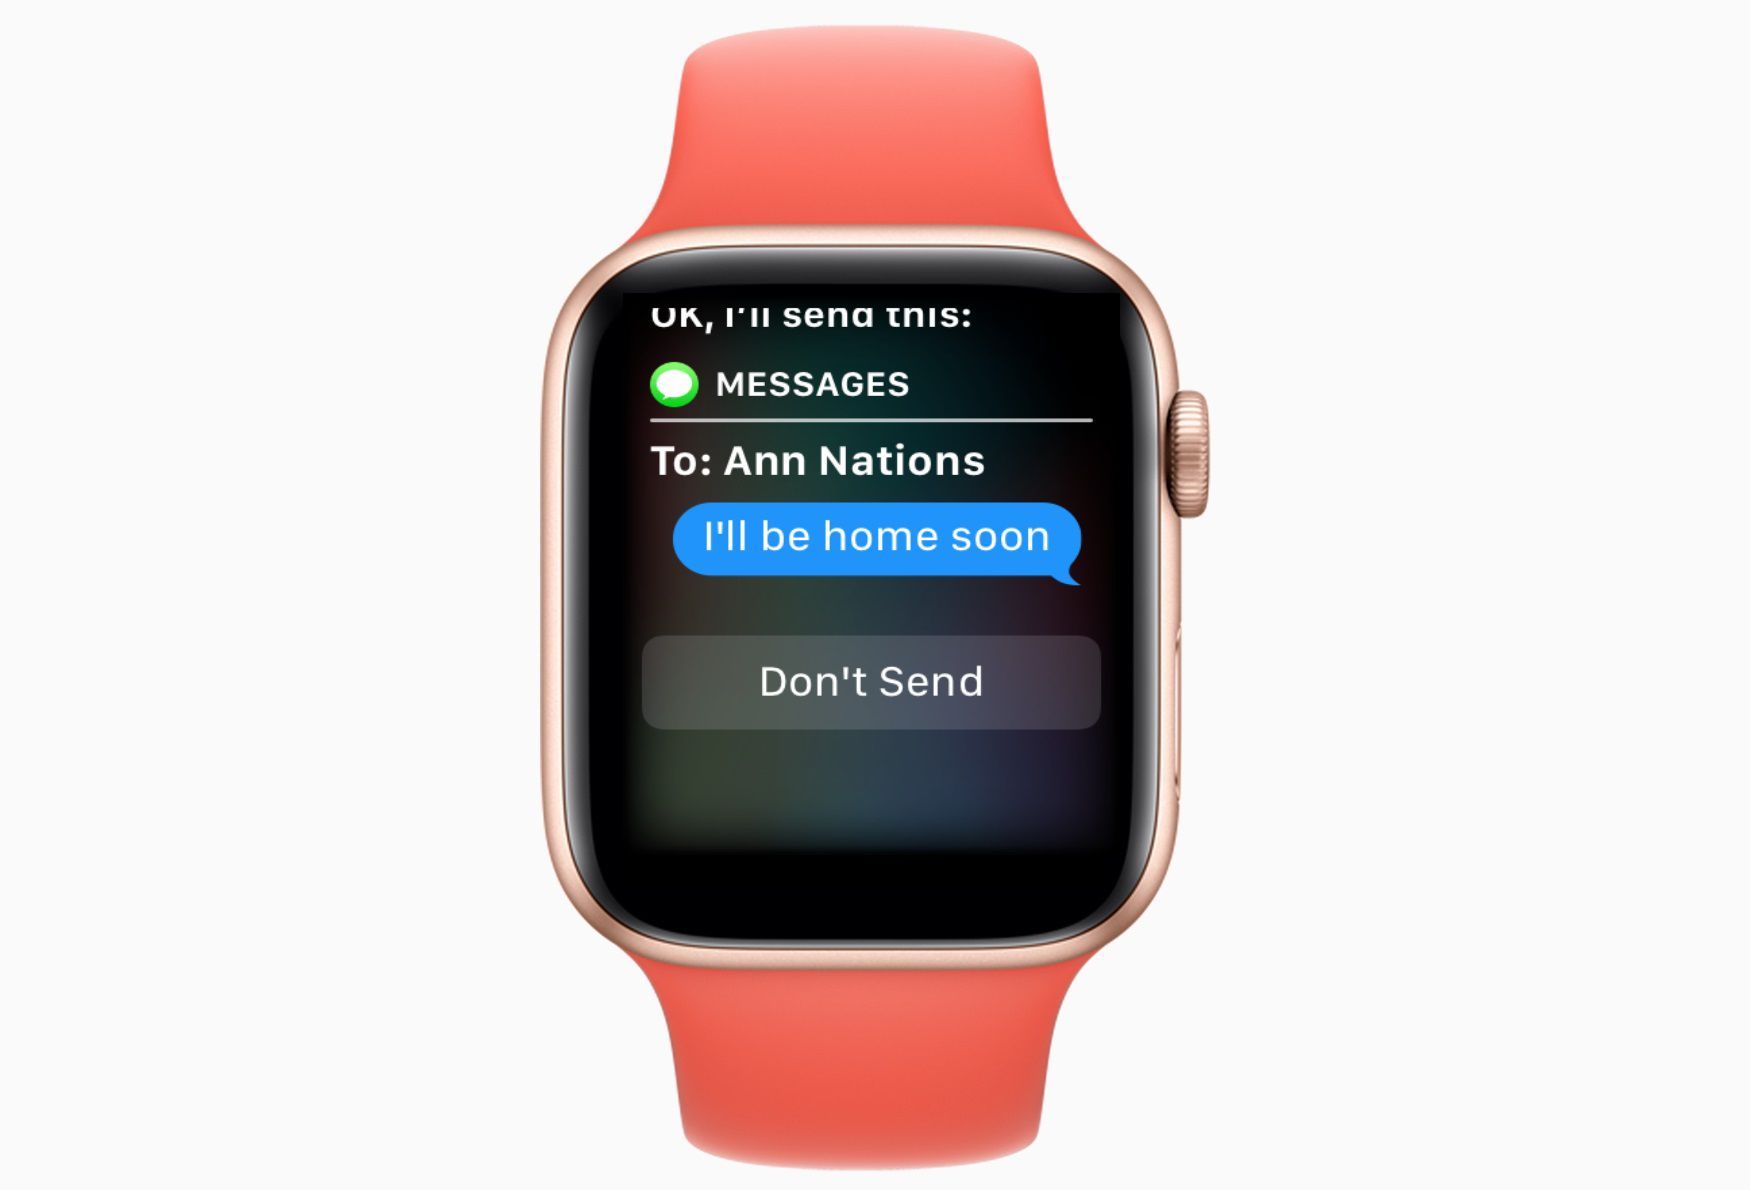 Часы Apple с Сири отправляют текстовое сообщение.